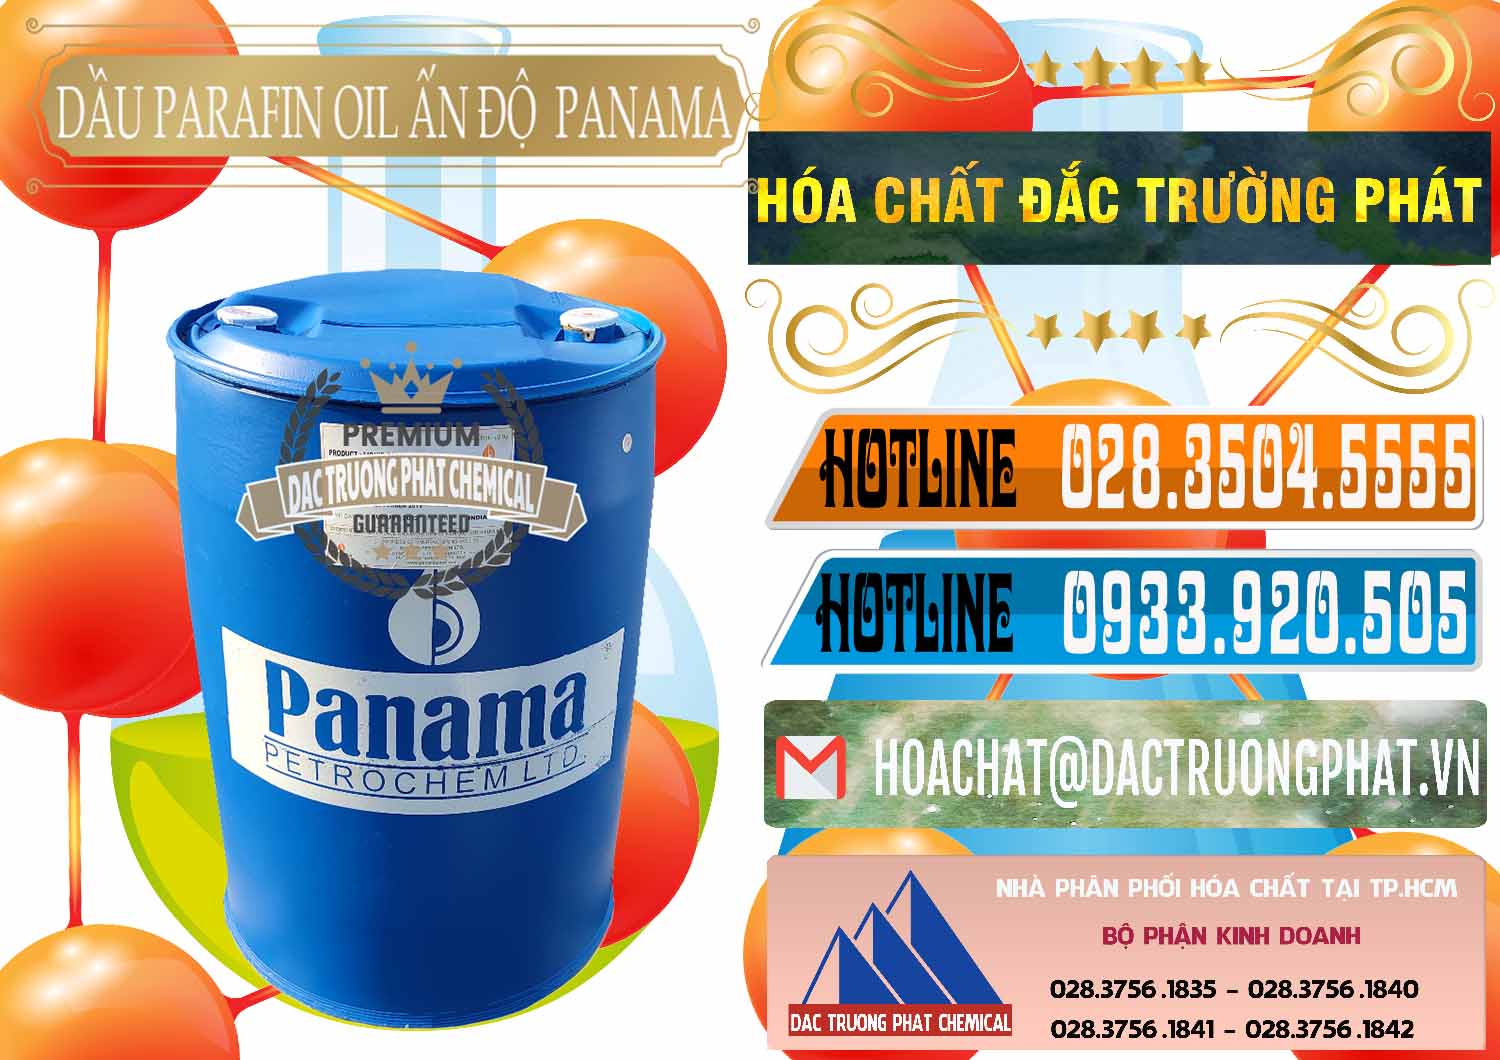 Đơn vị chuyên cung cấp & bán Dầu Parafin Oil Panama Ấn Độ India - 0061 - Chuyên cung cấp - bán hóa chất tại TP.HCM - stmp.net